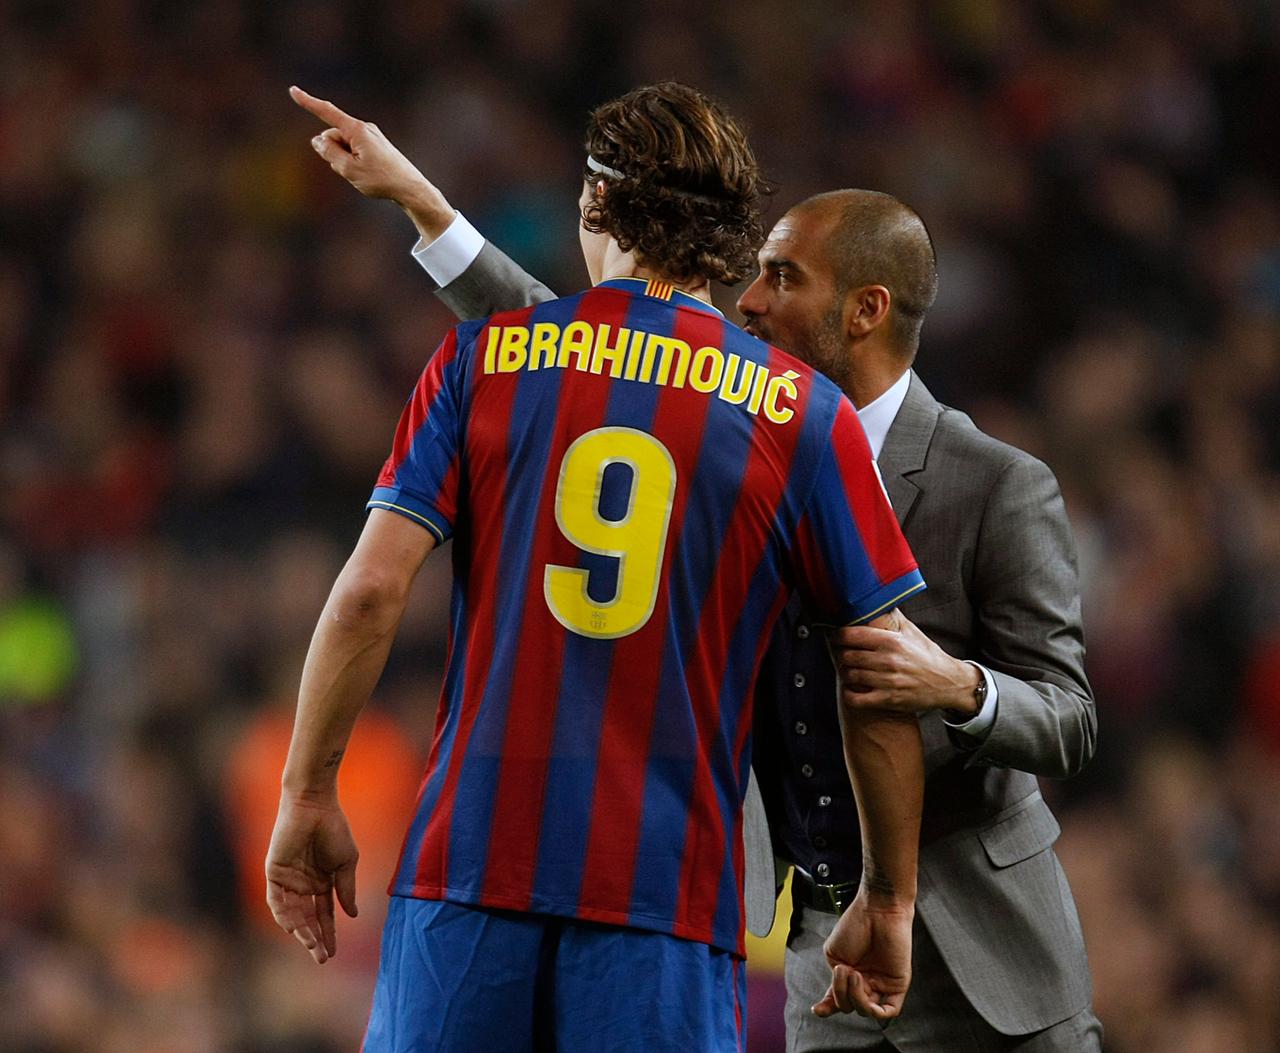 Fußballspieler Zlatan Ibrahimović und sein Trainer Pep Guardiola in einem Spiel des FC Barcelona